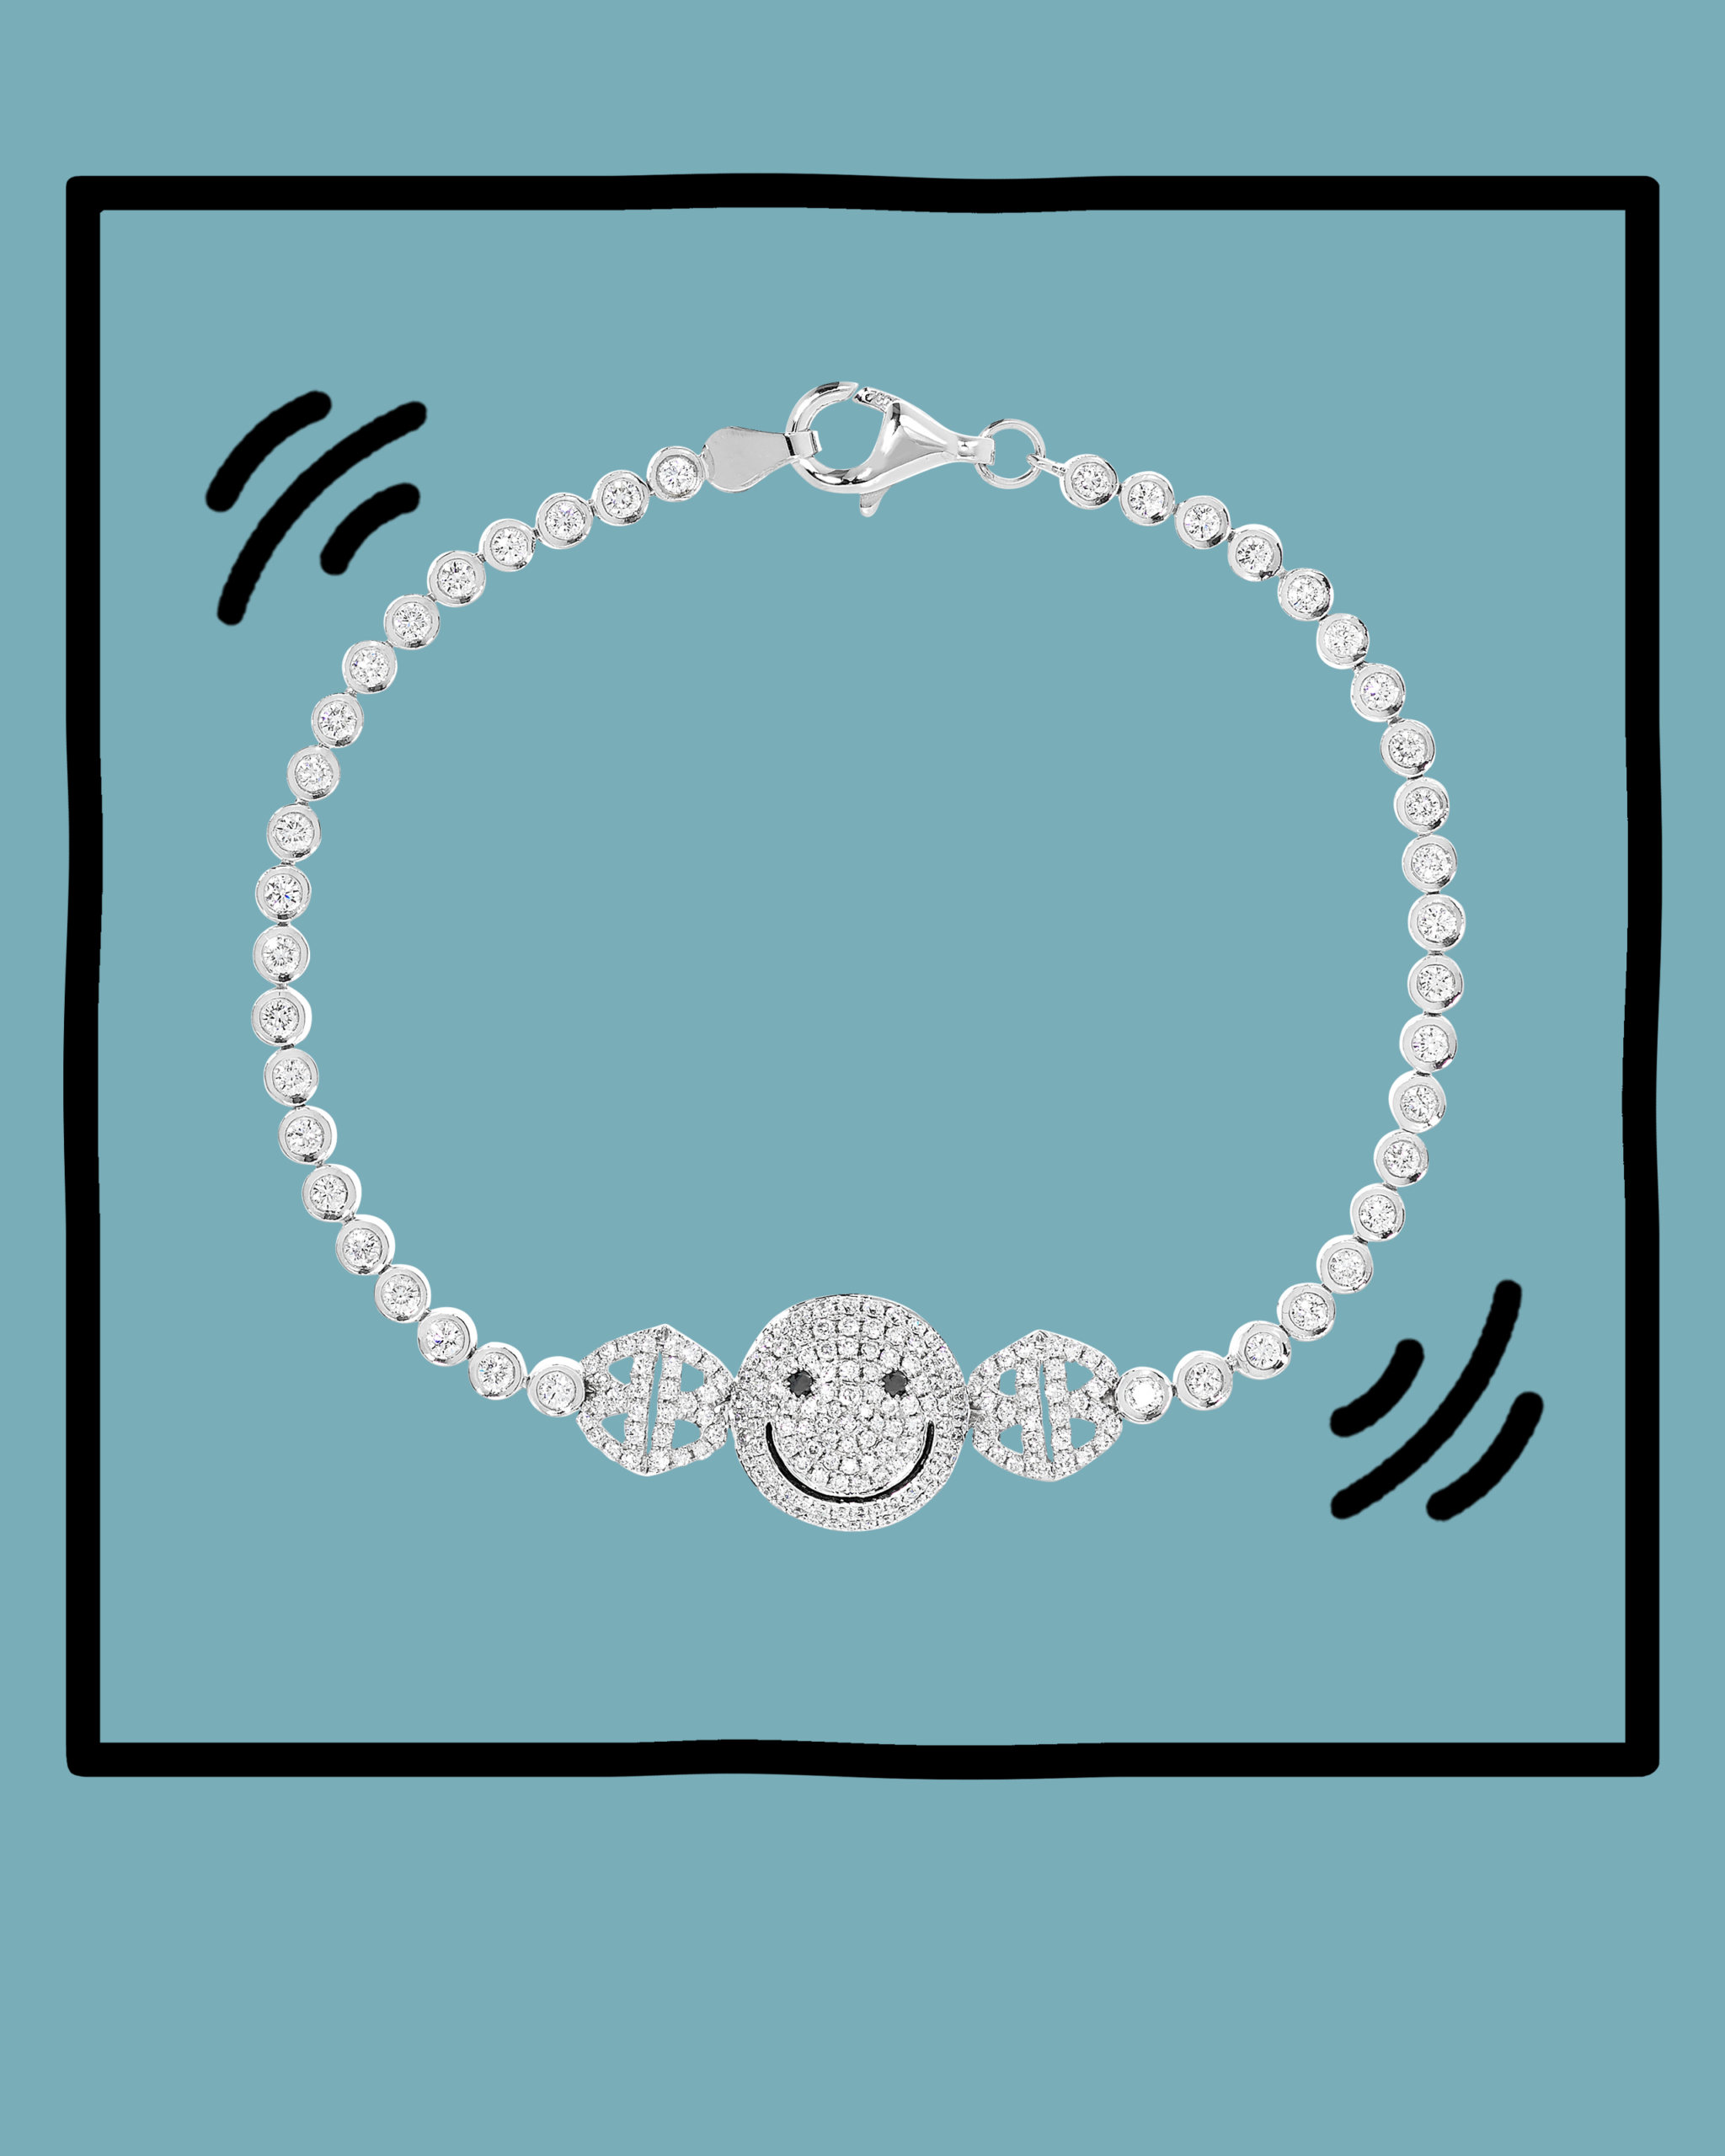 Round cut diamond set within a white gold smiley face emoji bracelet from Lorraine Schwartz